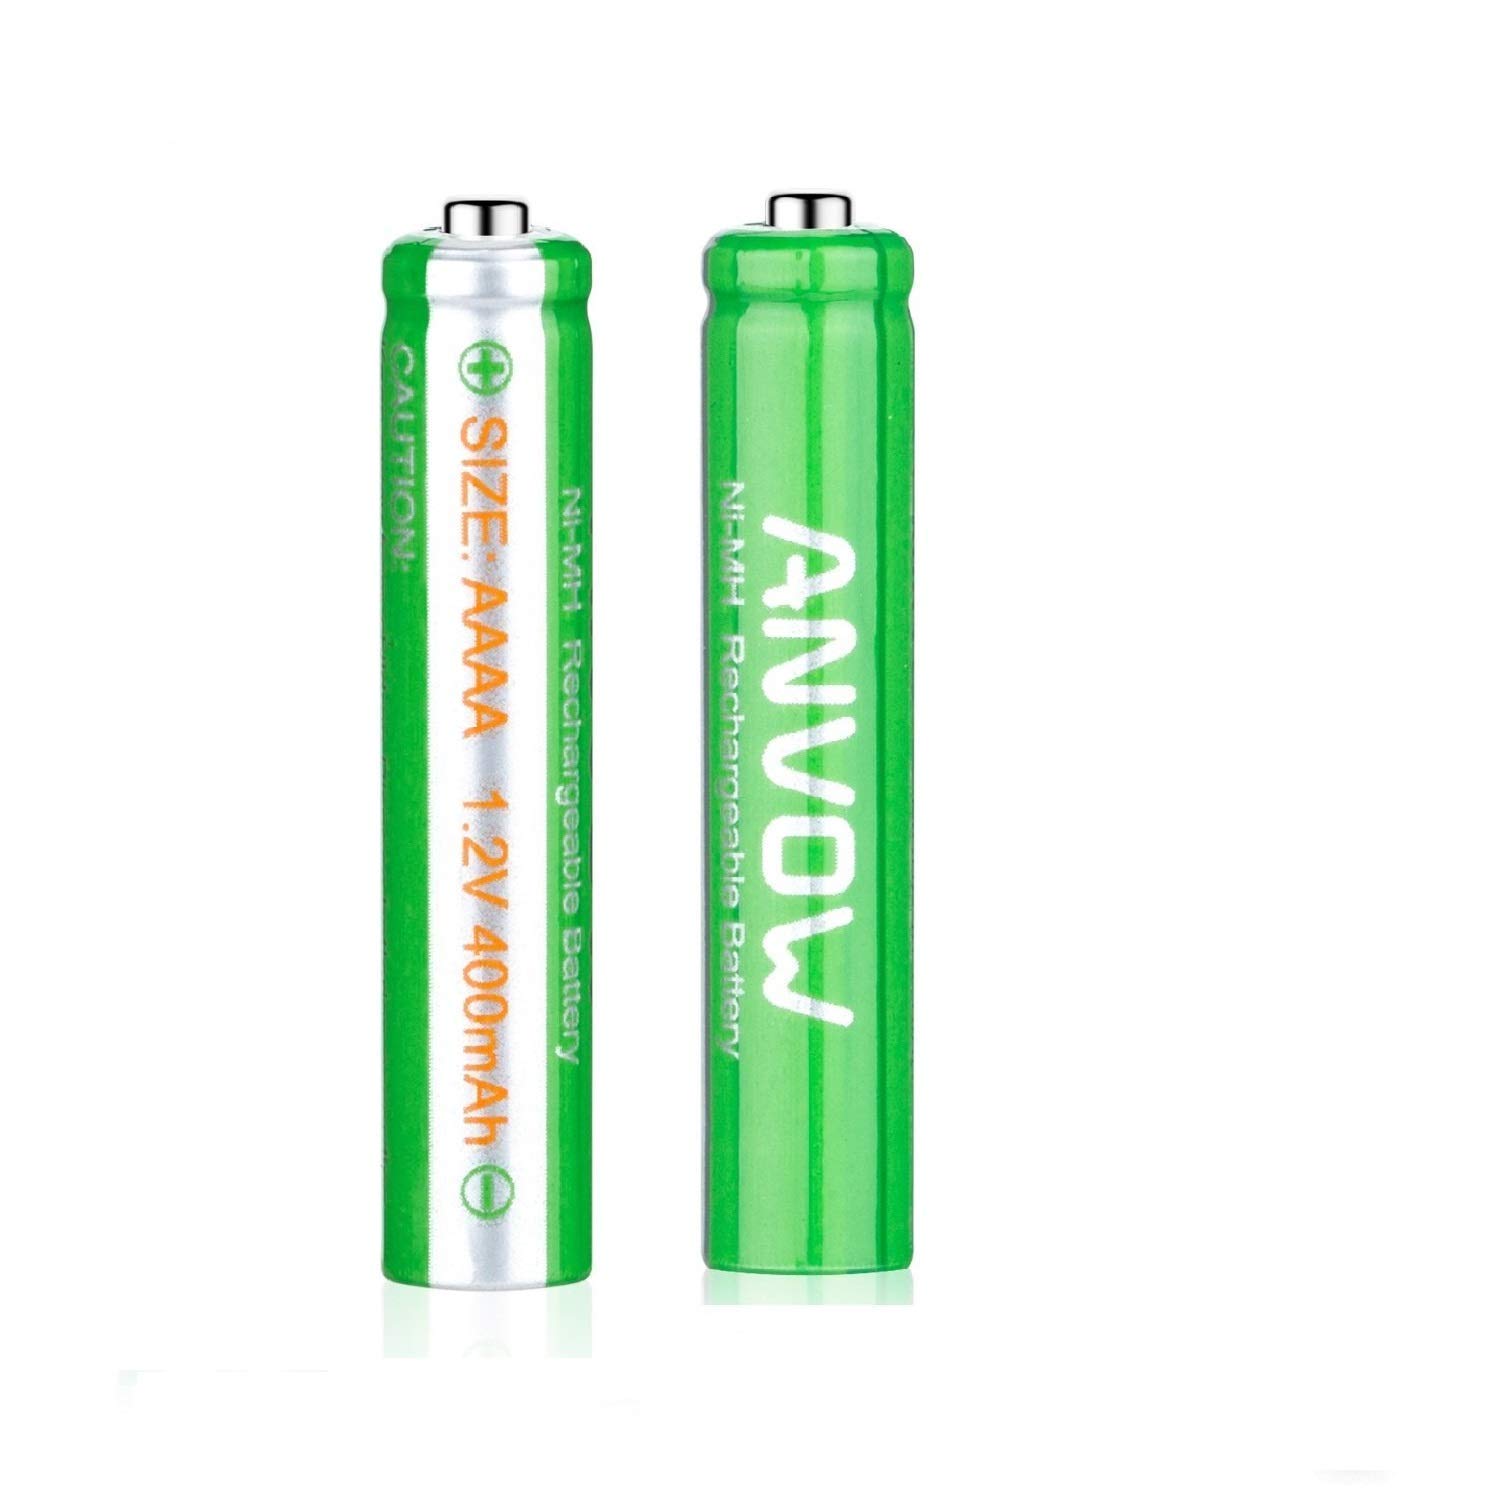 Bộ sản phẩm gồm Pin 4a dùng nhiều lần và thiết bị sạc điện | 2 rechargeable batteries and 1 charger